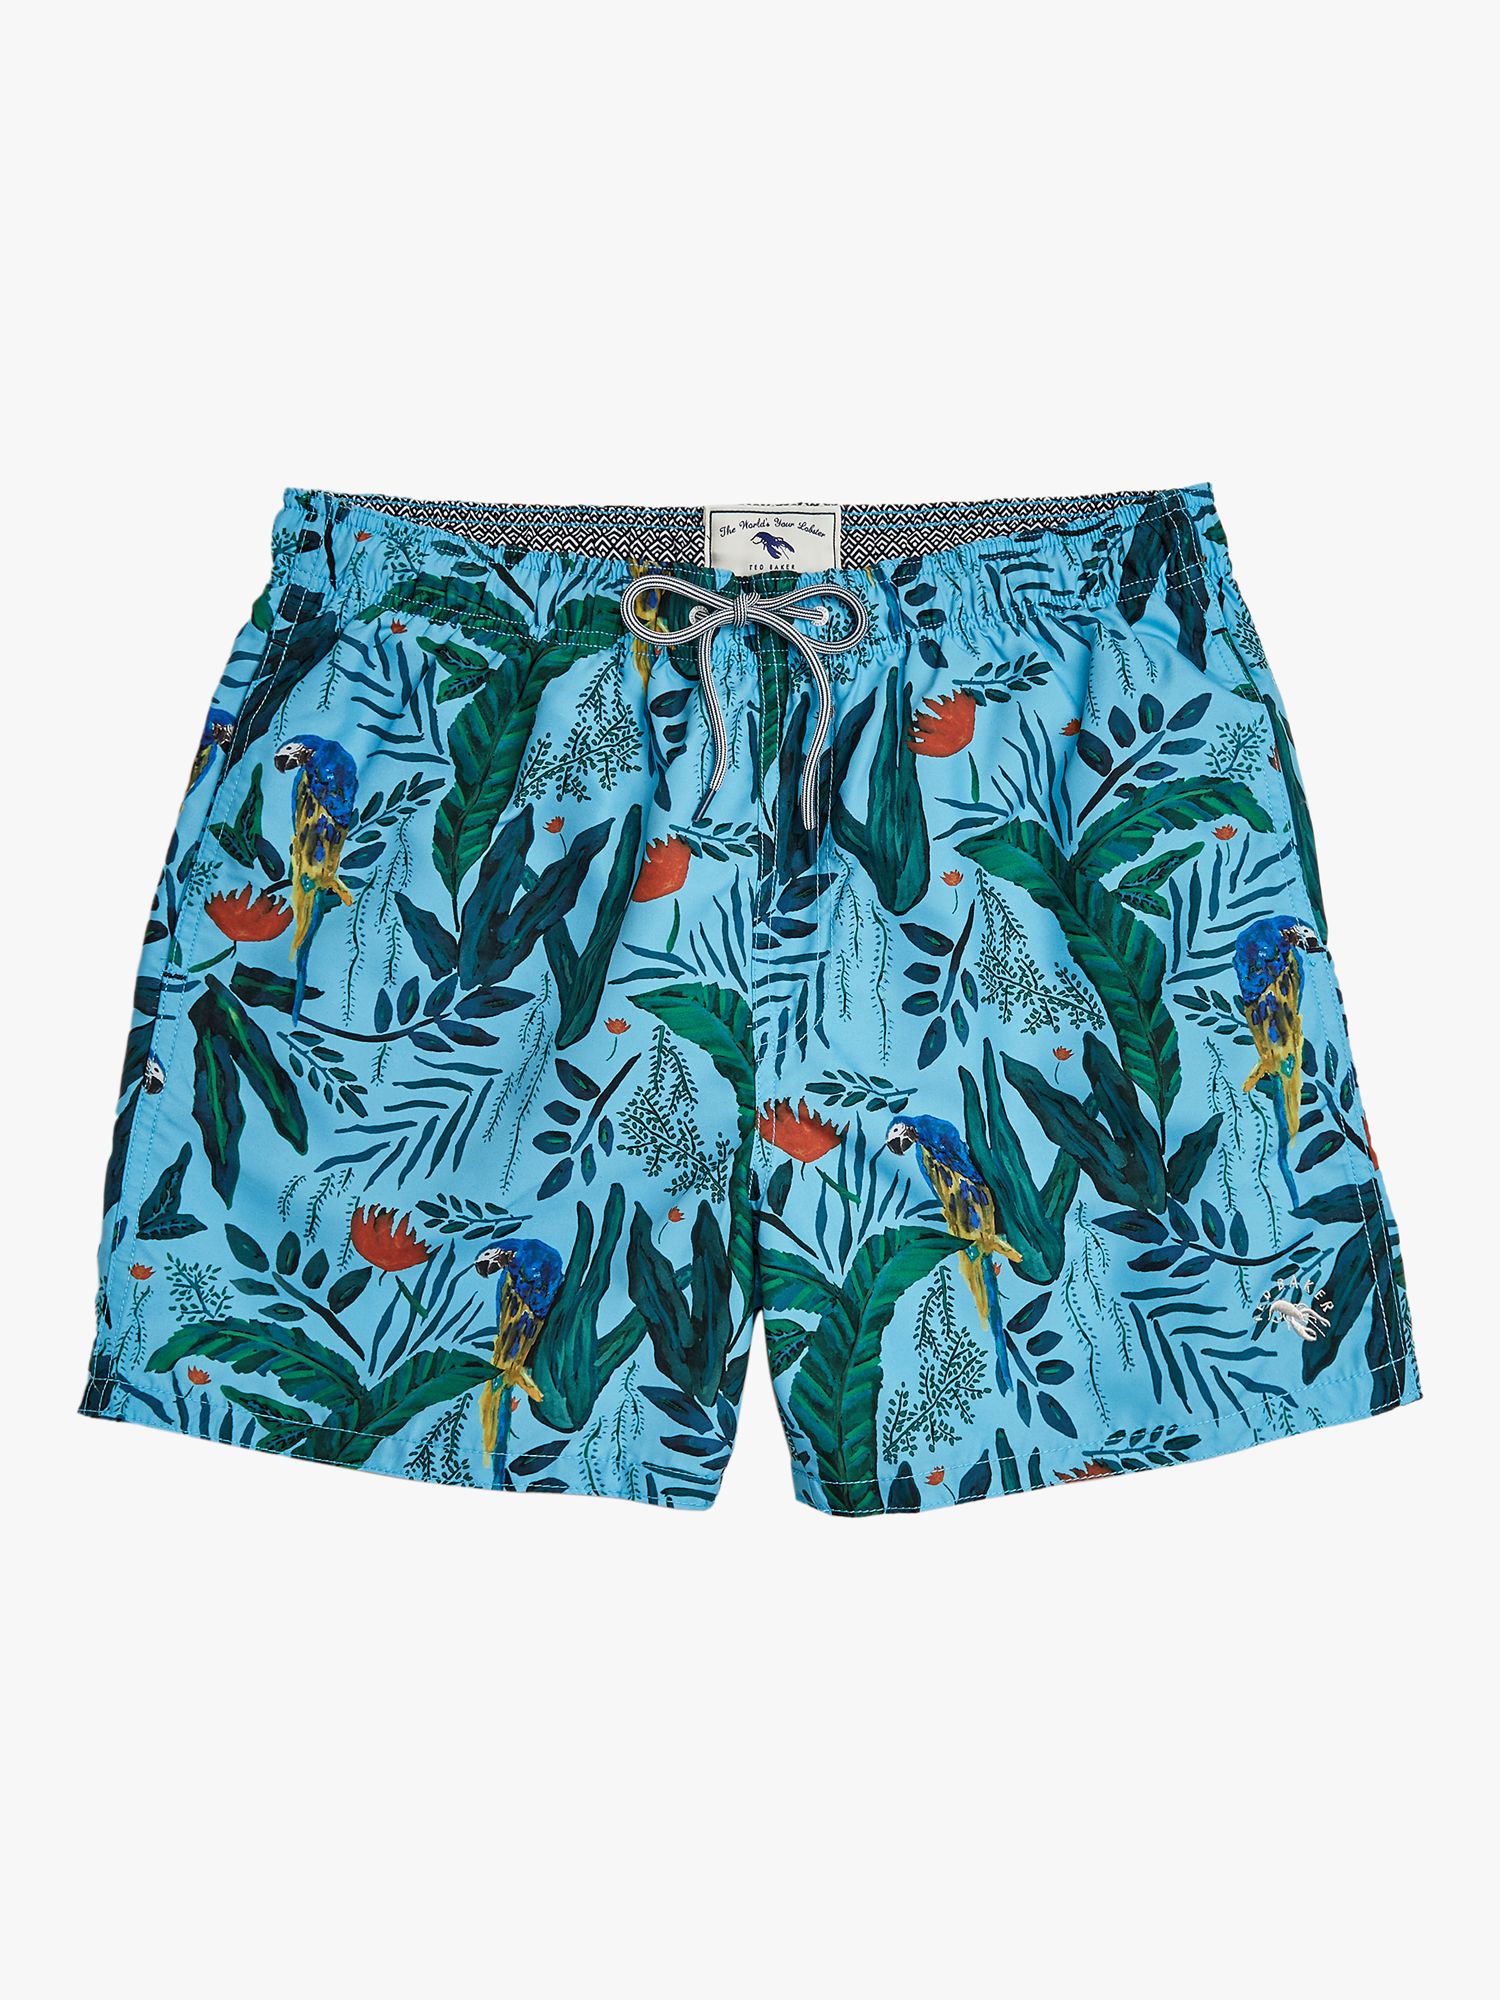 Ted Baker Borrla Parrot Swim Shorts, Light Blue